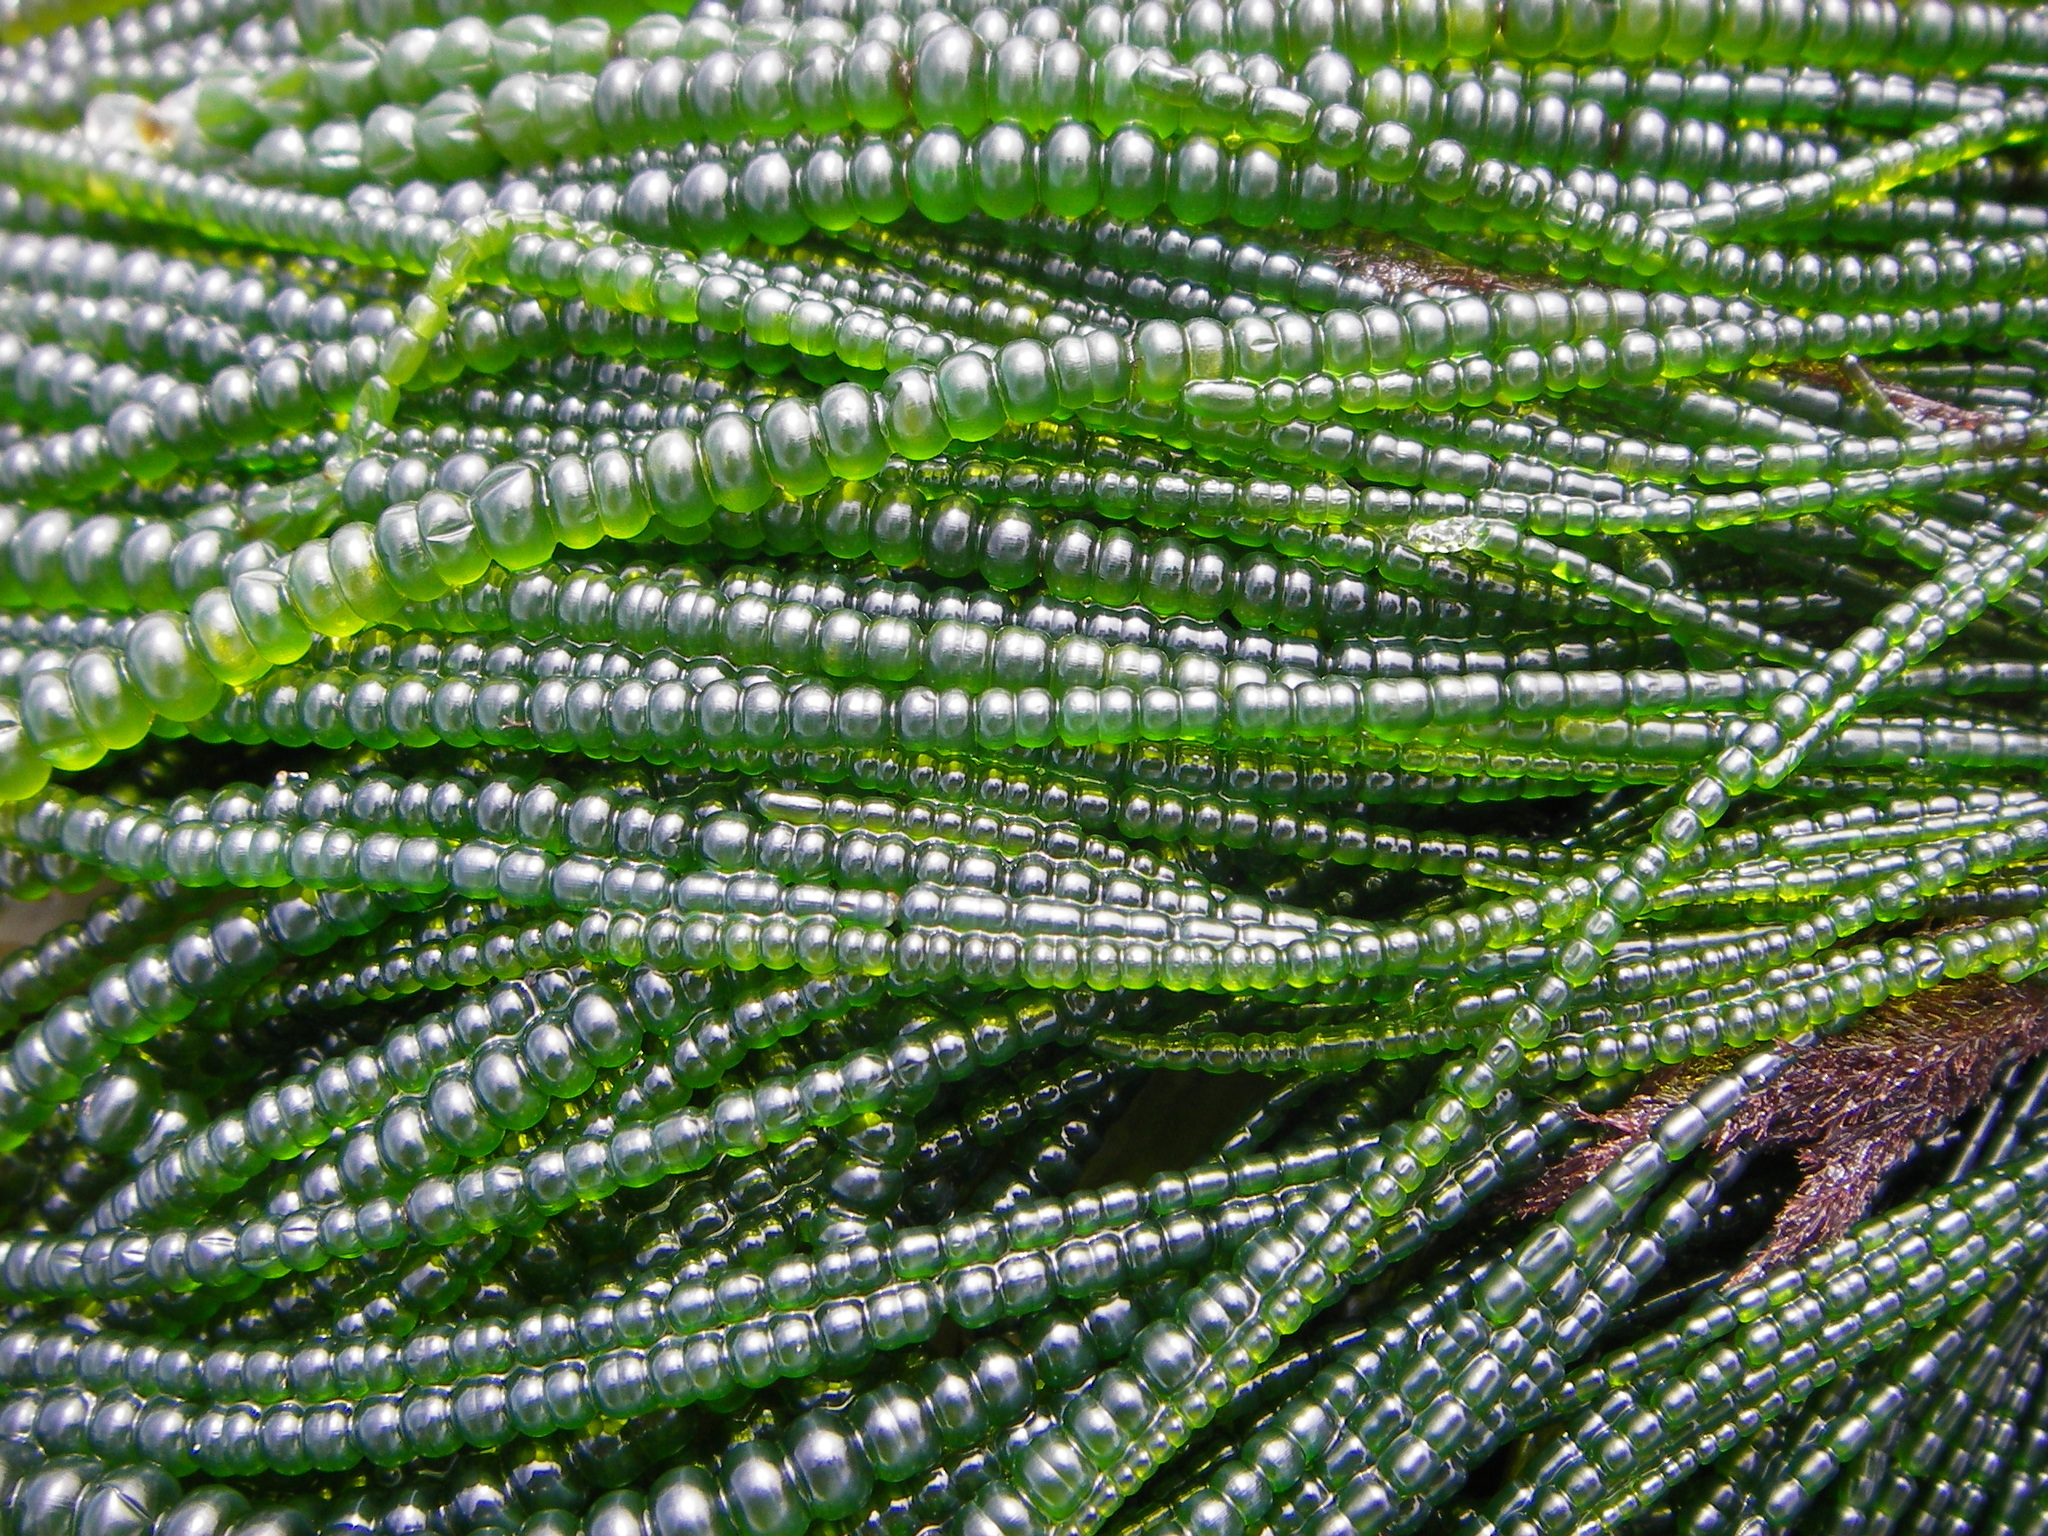 Cuerdas de algas de aspecto blanquecino, de color verde brillante, en forma de cuentas, apiladas una encima de la otra.